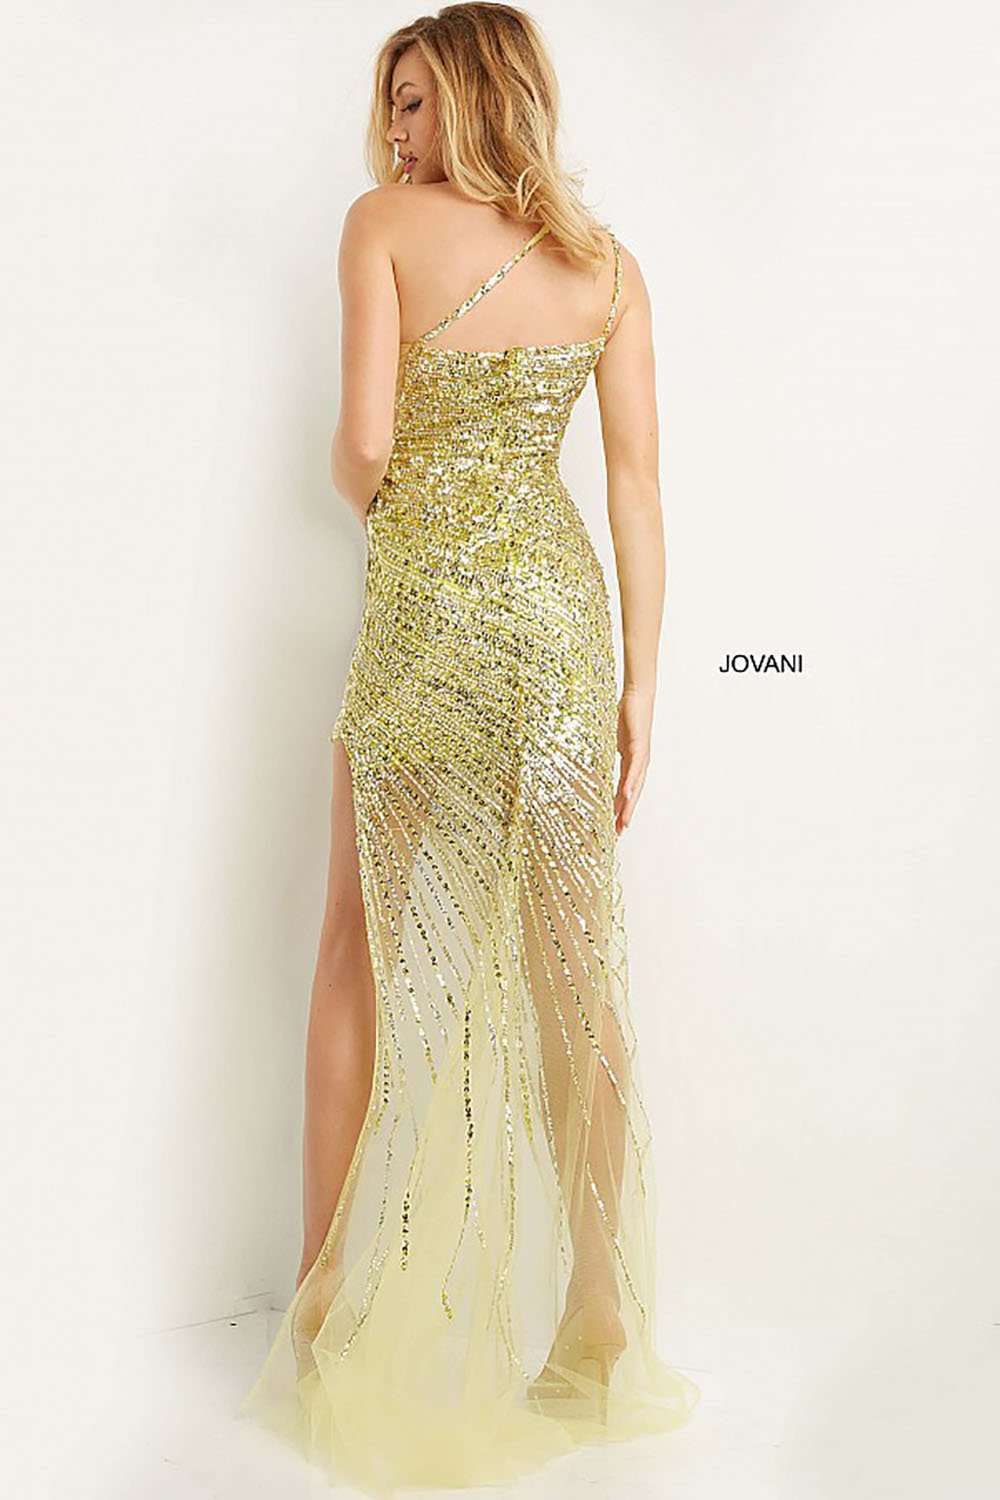 Embellished One Shoulder Prom Dress Jovani 05647 - Morvarieds Fashion